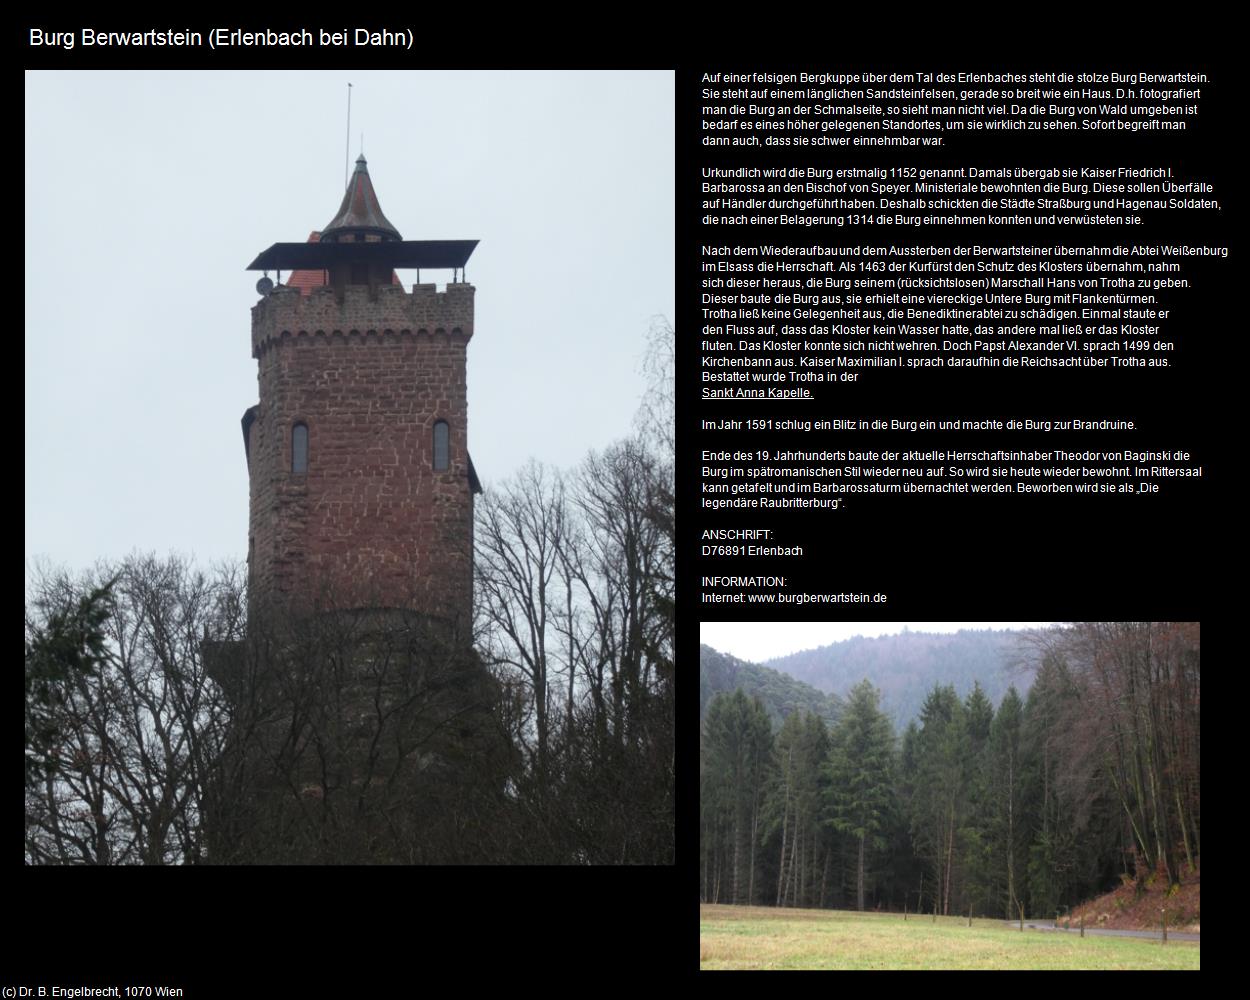 Burg Berwartstein (Erlenbach bei Dahn (DEU-RP)) in RHEINLAND-PFALZ und SAARLAND(c)B.Engelbrecht